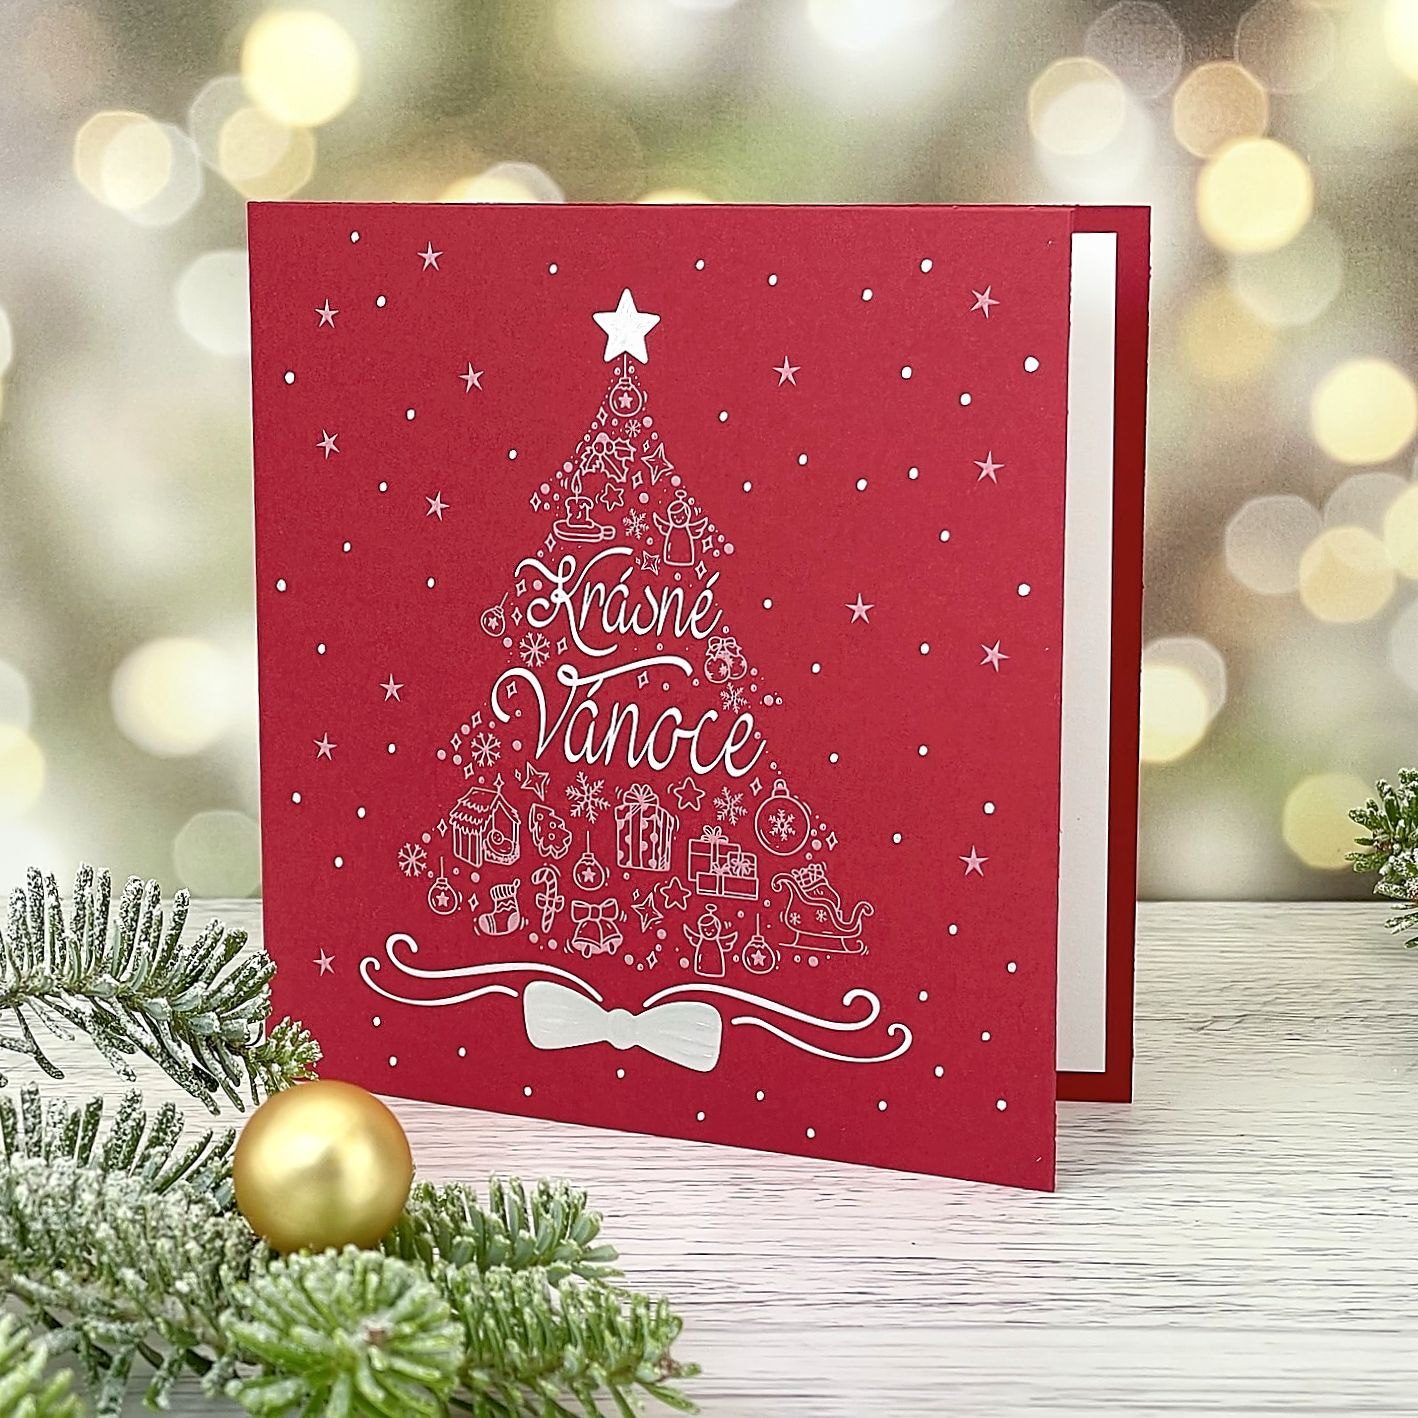 Novoroční–vánoční přání z vesele červeného grafického papíru s motivem stříbrno bílého vánočního stromu, otevírací, formát 135 × 135 mm.